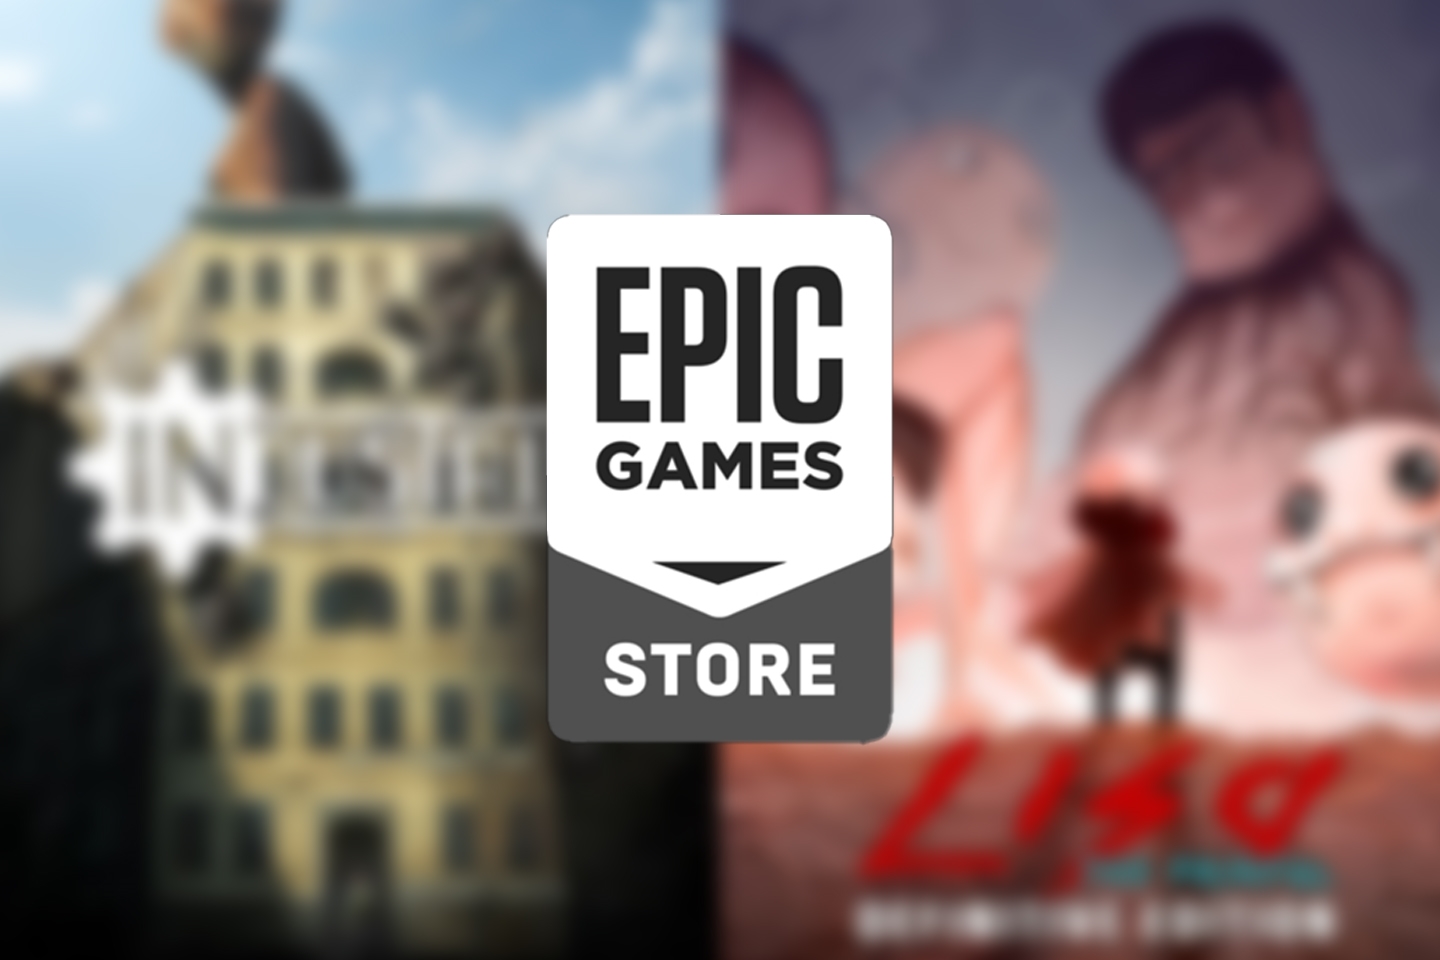 Epic Games libera dois novos jogos grátis hoje (25)! Resgate agora!